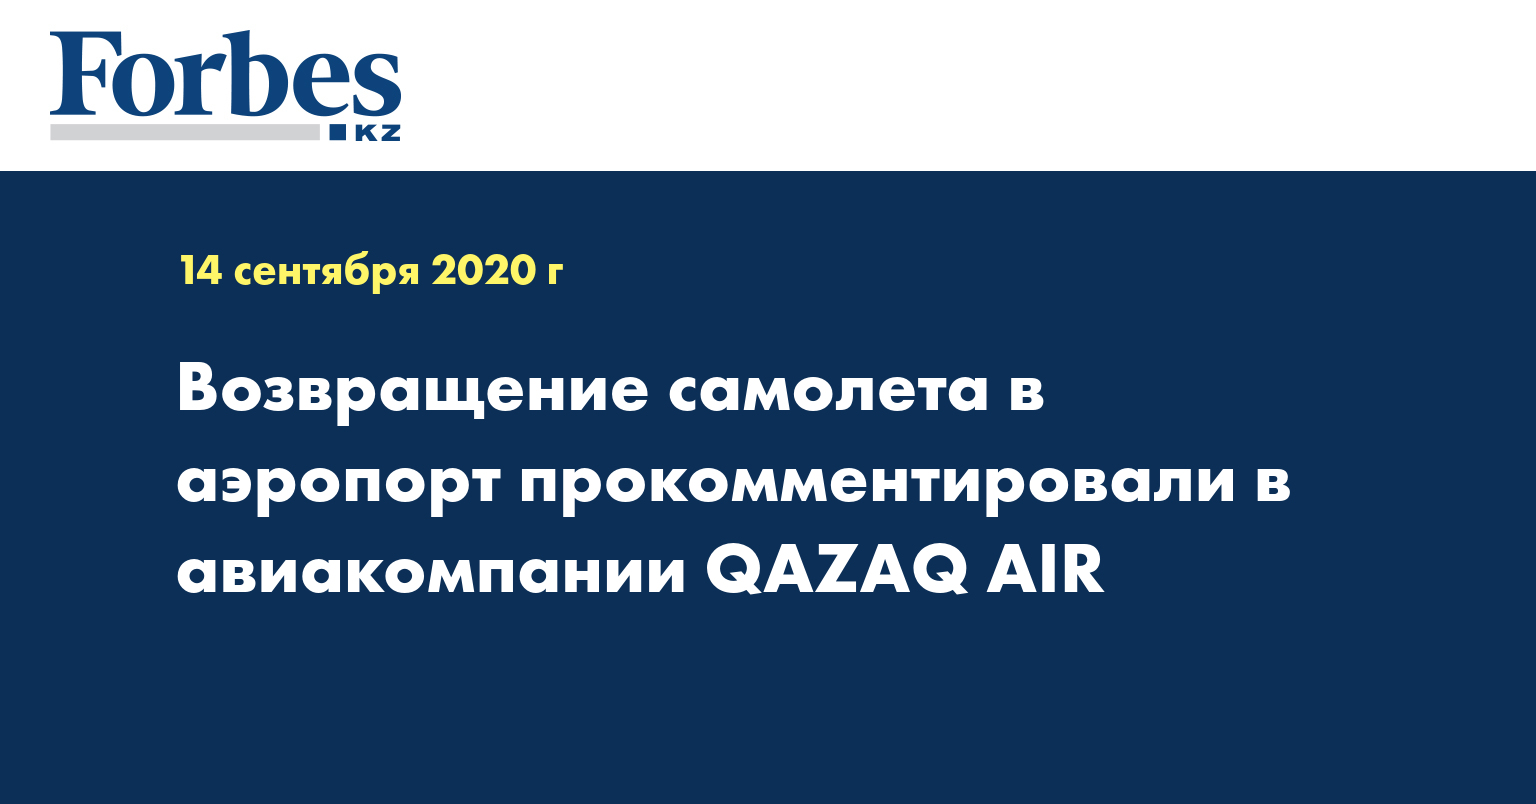 Возвращение самолета в аэропорт прокомментировали в авиакомпании QAZAQ AIR